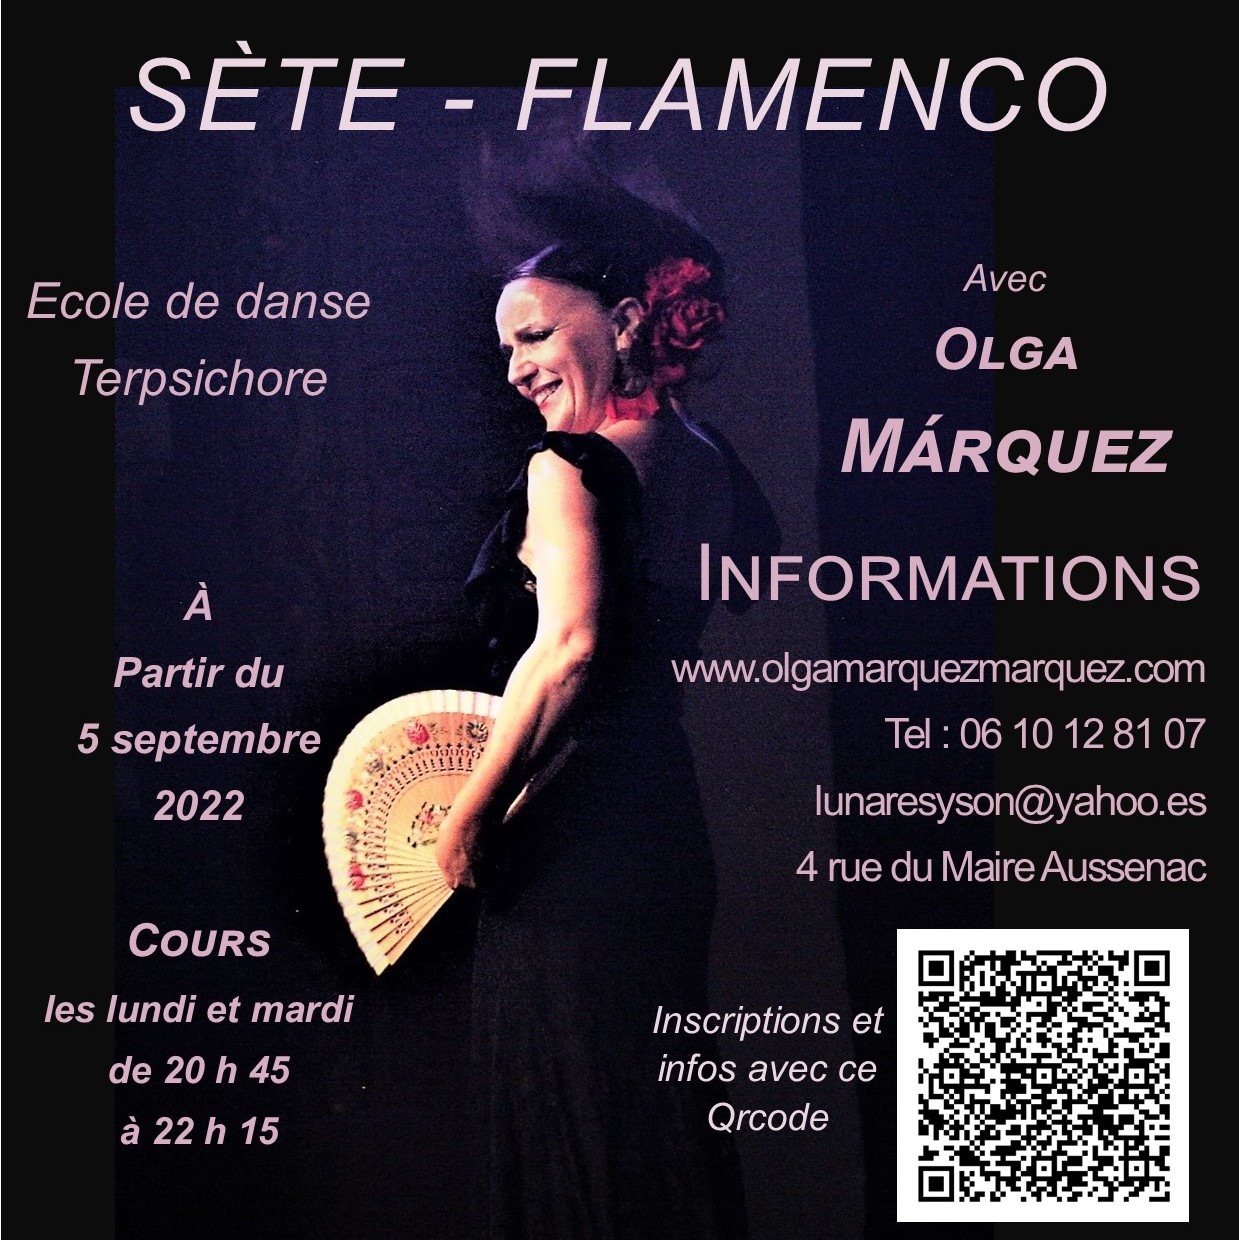 Sète - Danse flamenca en cours hebdomadaires ou stages mensuels